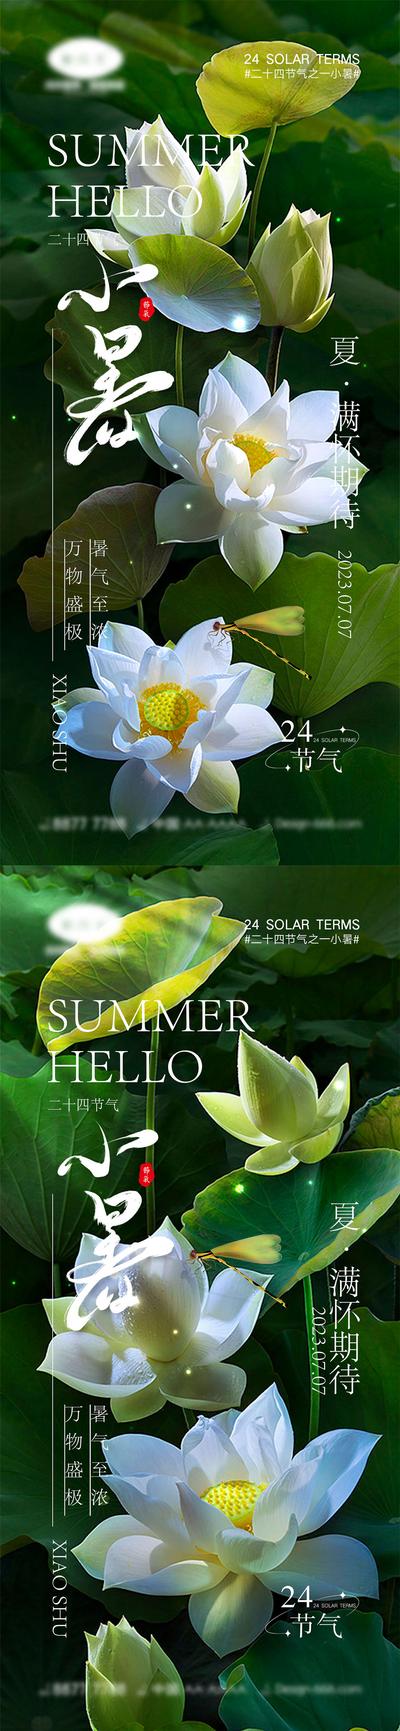 南门网 海报 系列 二十四节气 立夏 夏至 小暑 大暑 夏天 西瓜 阳光 初夏 昆虫